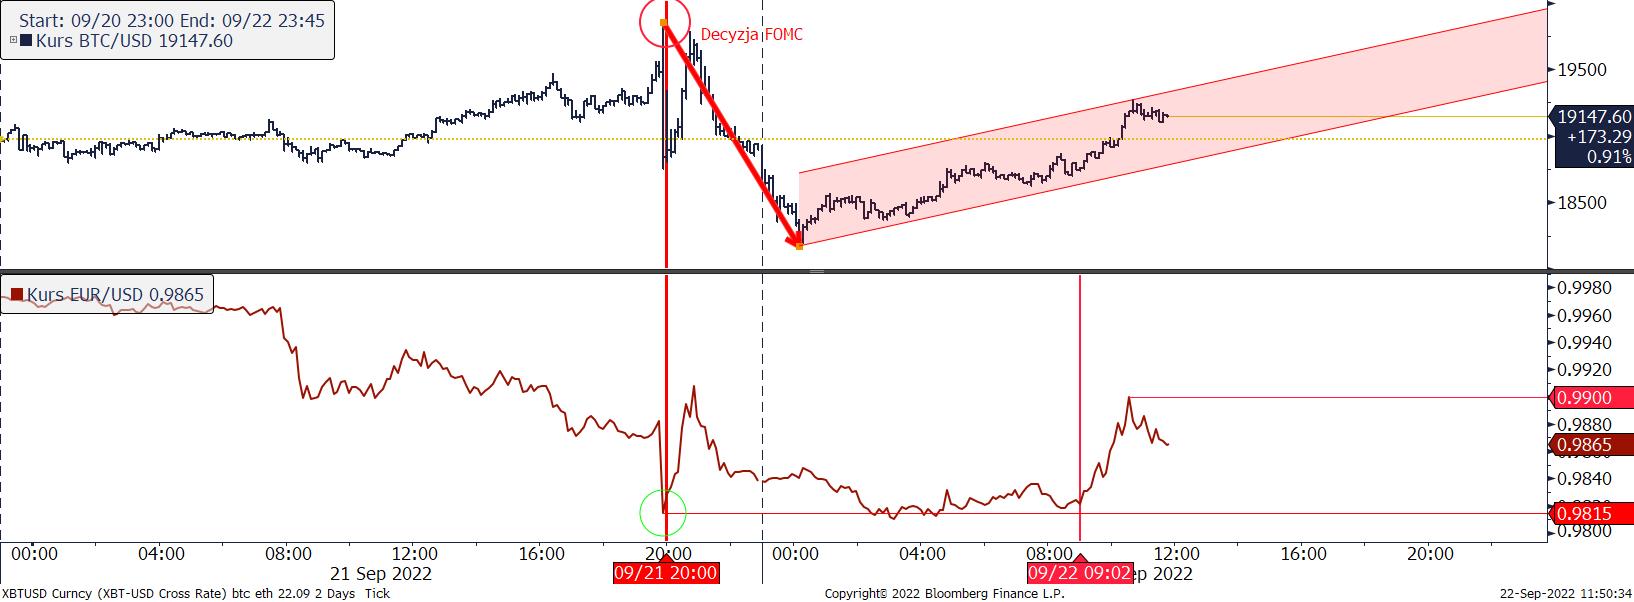 Wykres porównawczy BTC/USD i EUR/USD źródło: Bloomberg